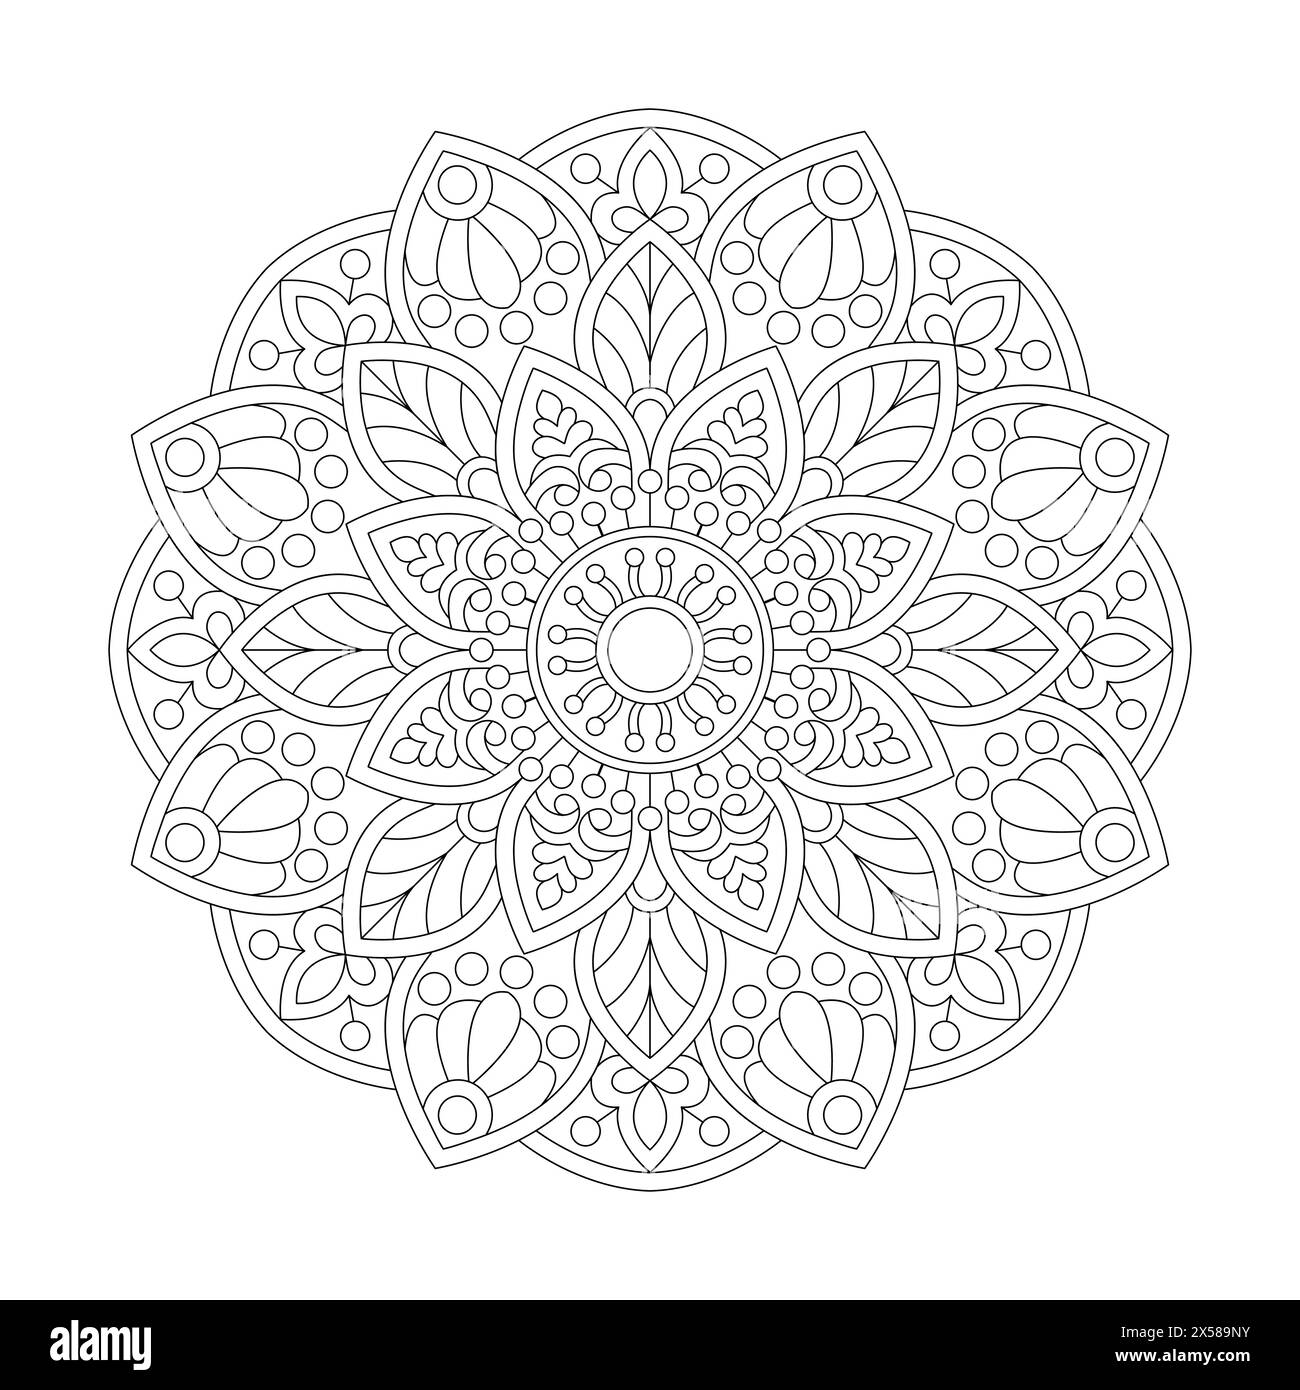 Pagina Ethereal Enigma Mandala da colorare per interno libro kdp. Petali tranquilli, capacità di rilassarsi, esperienze cerebrali, Harmonous Haven, Peaceful Por Illustrazione Vettoriale